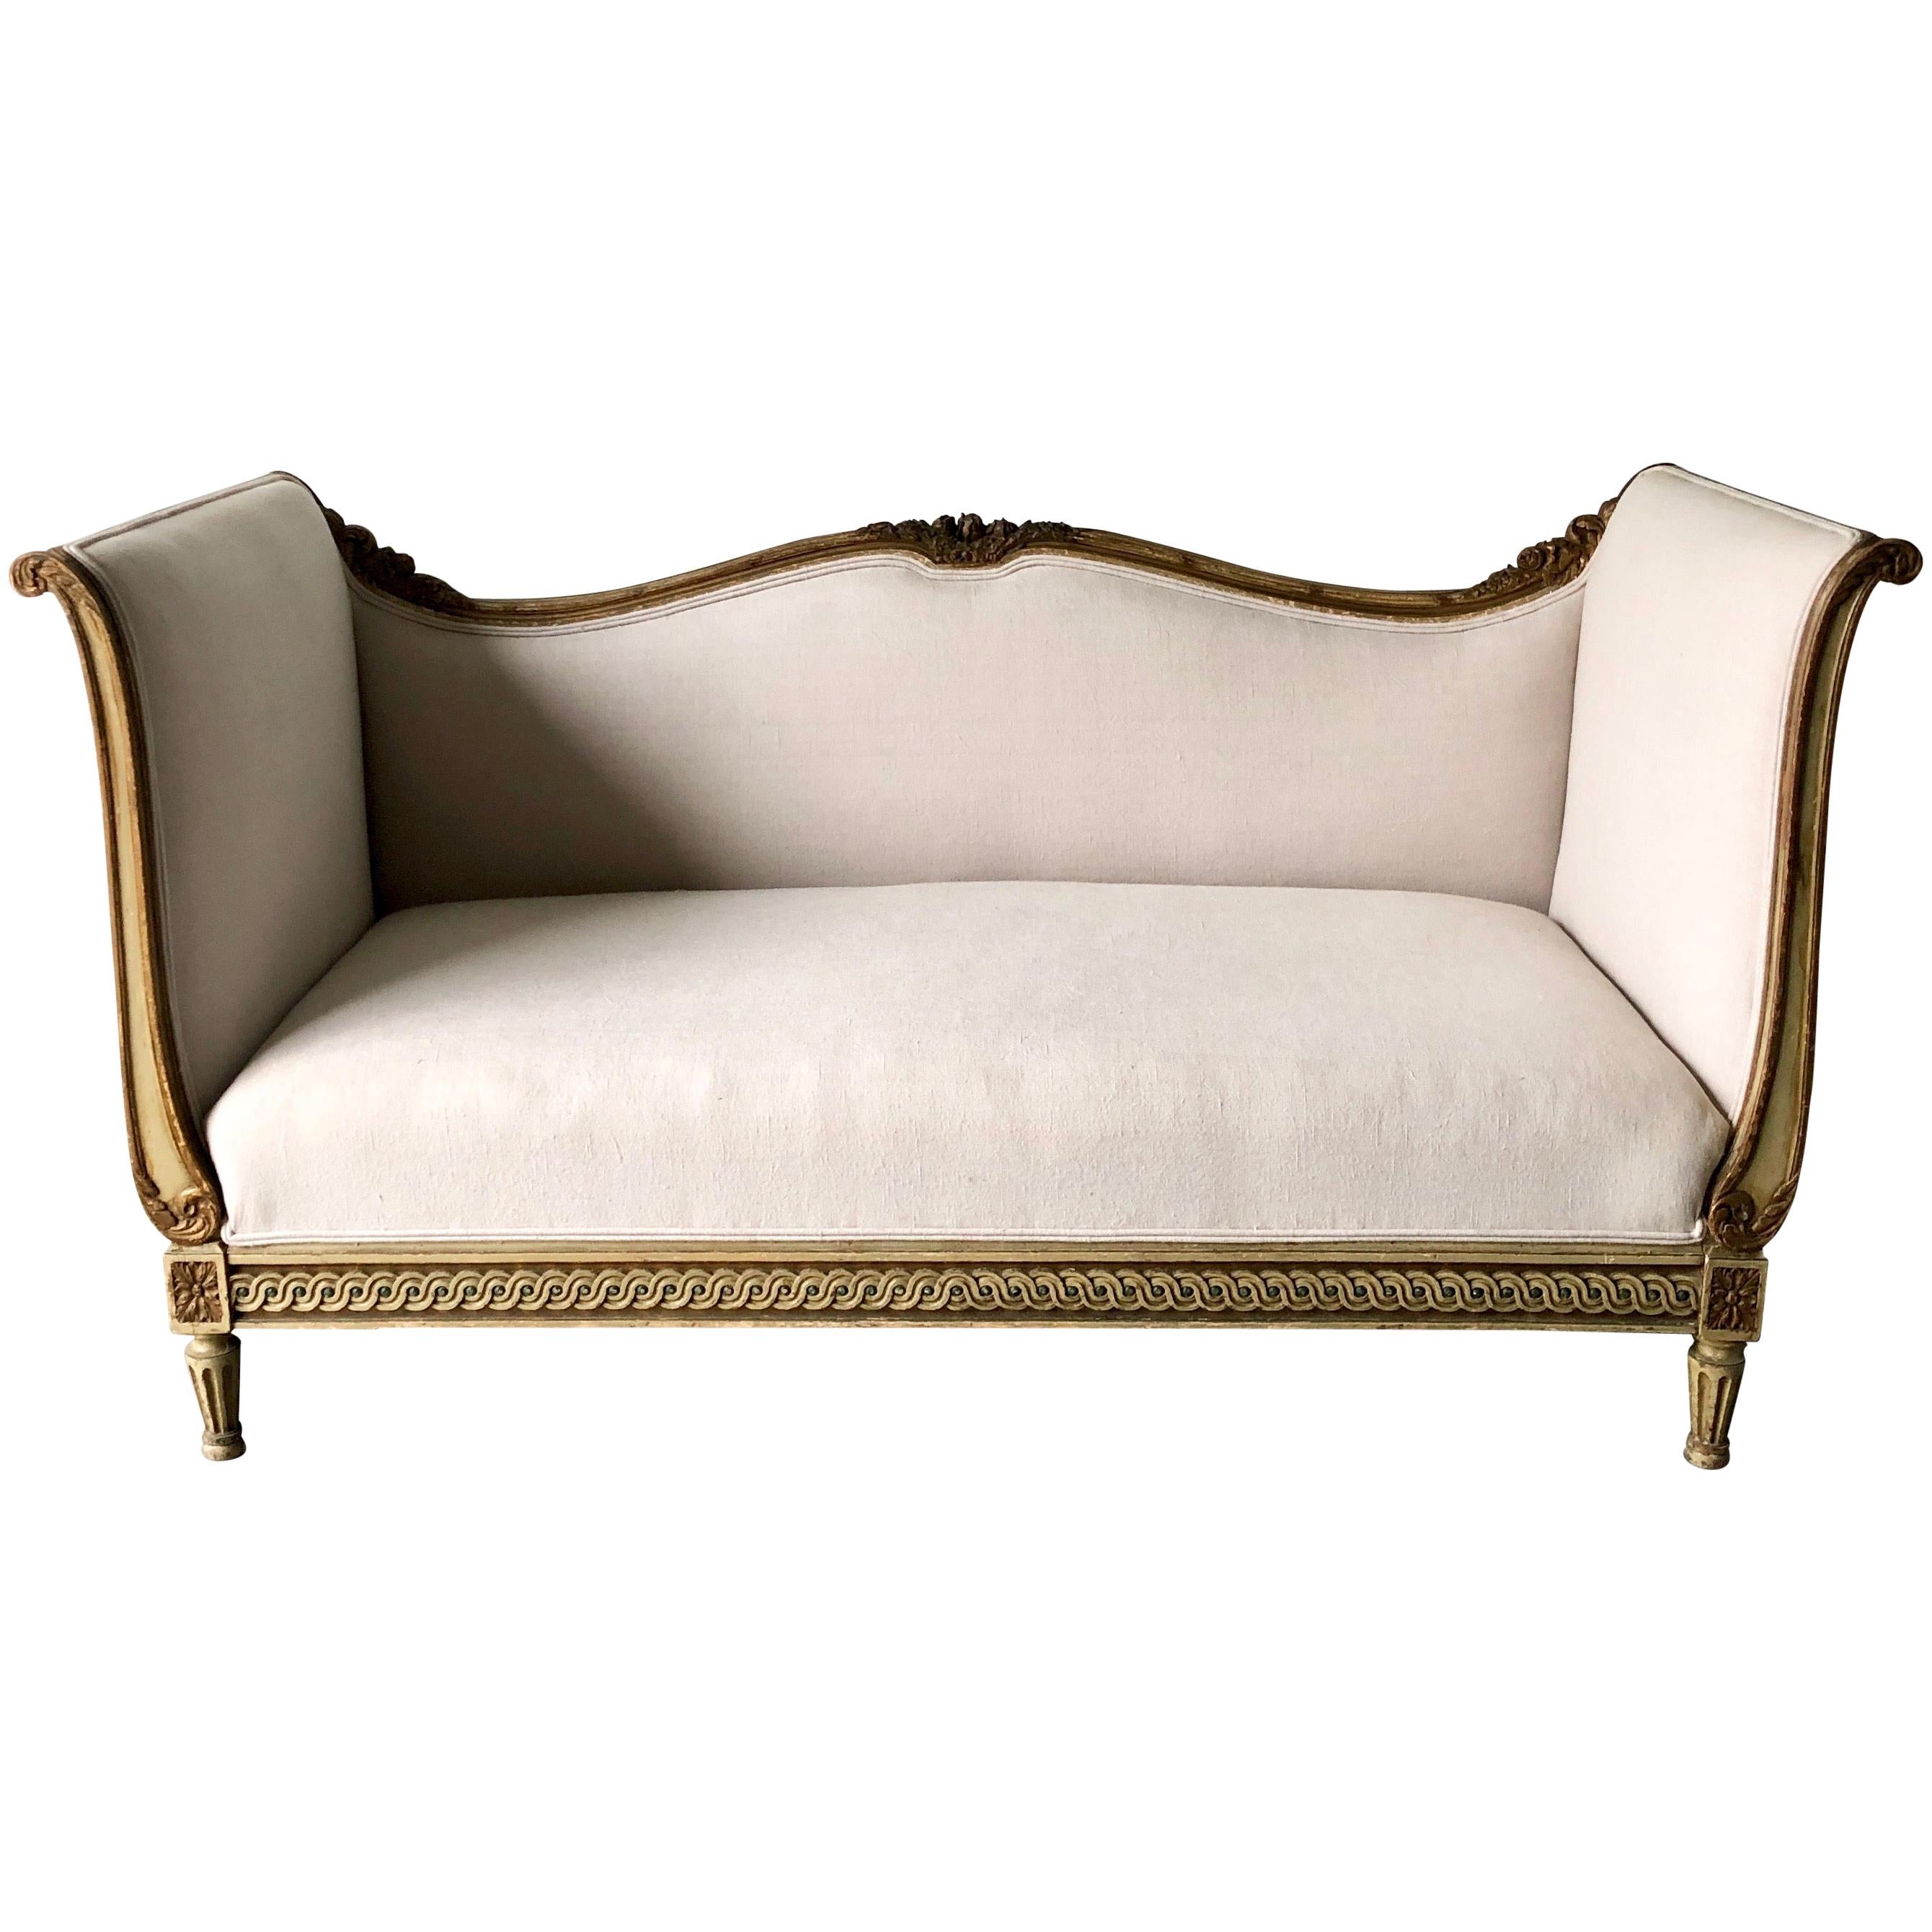 19th Century Louis XVI Style French Sofa